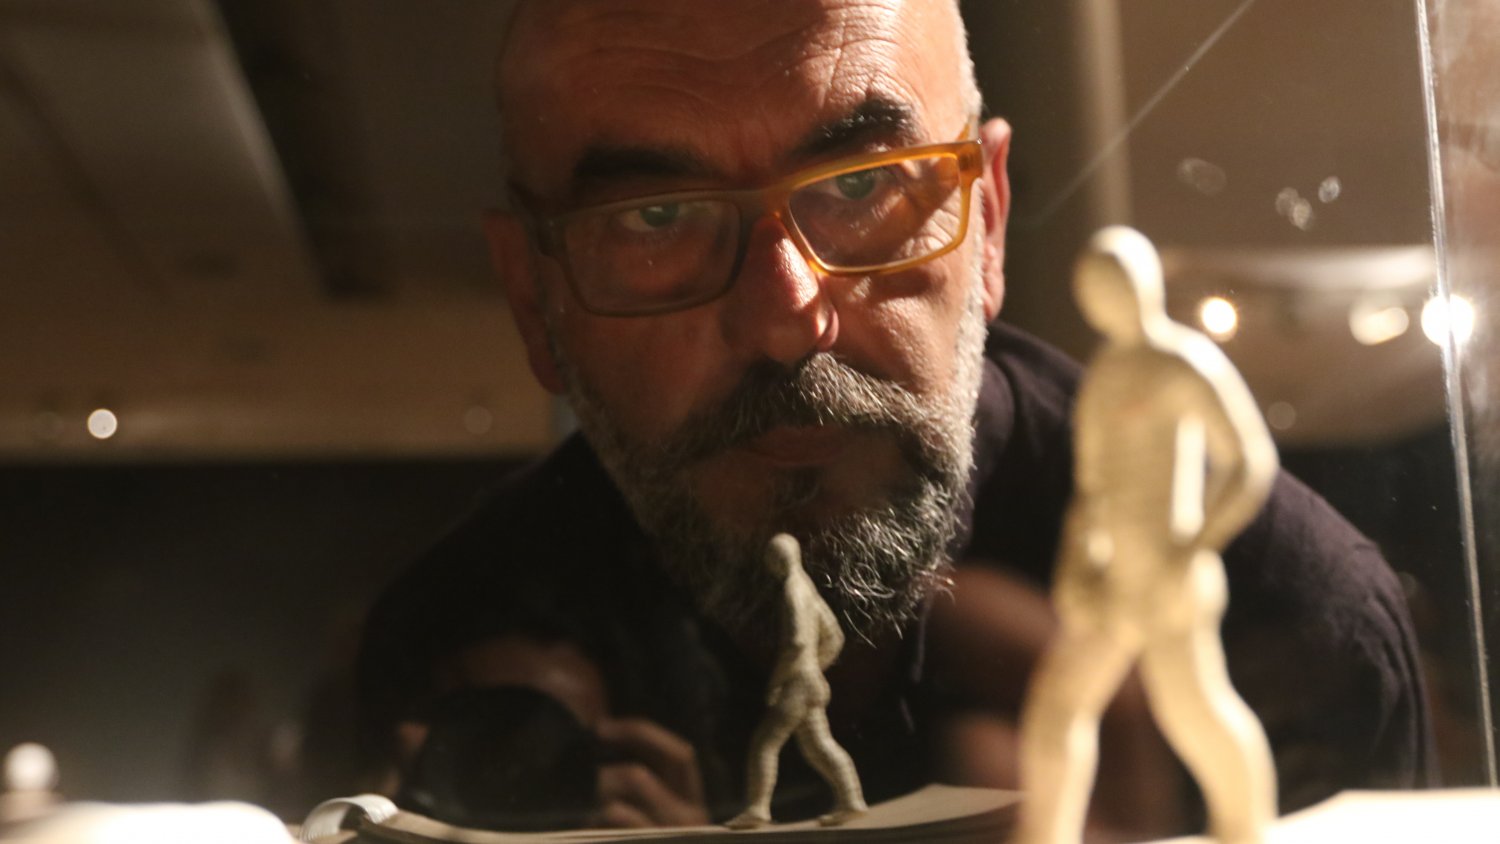 El Centro Cultural MVA de la Diputación de Málaga acogerá la exposición 'Nada grave' de Cayetano Romero